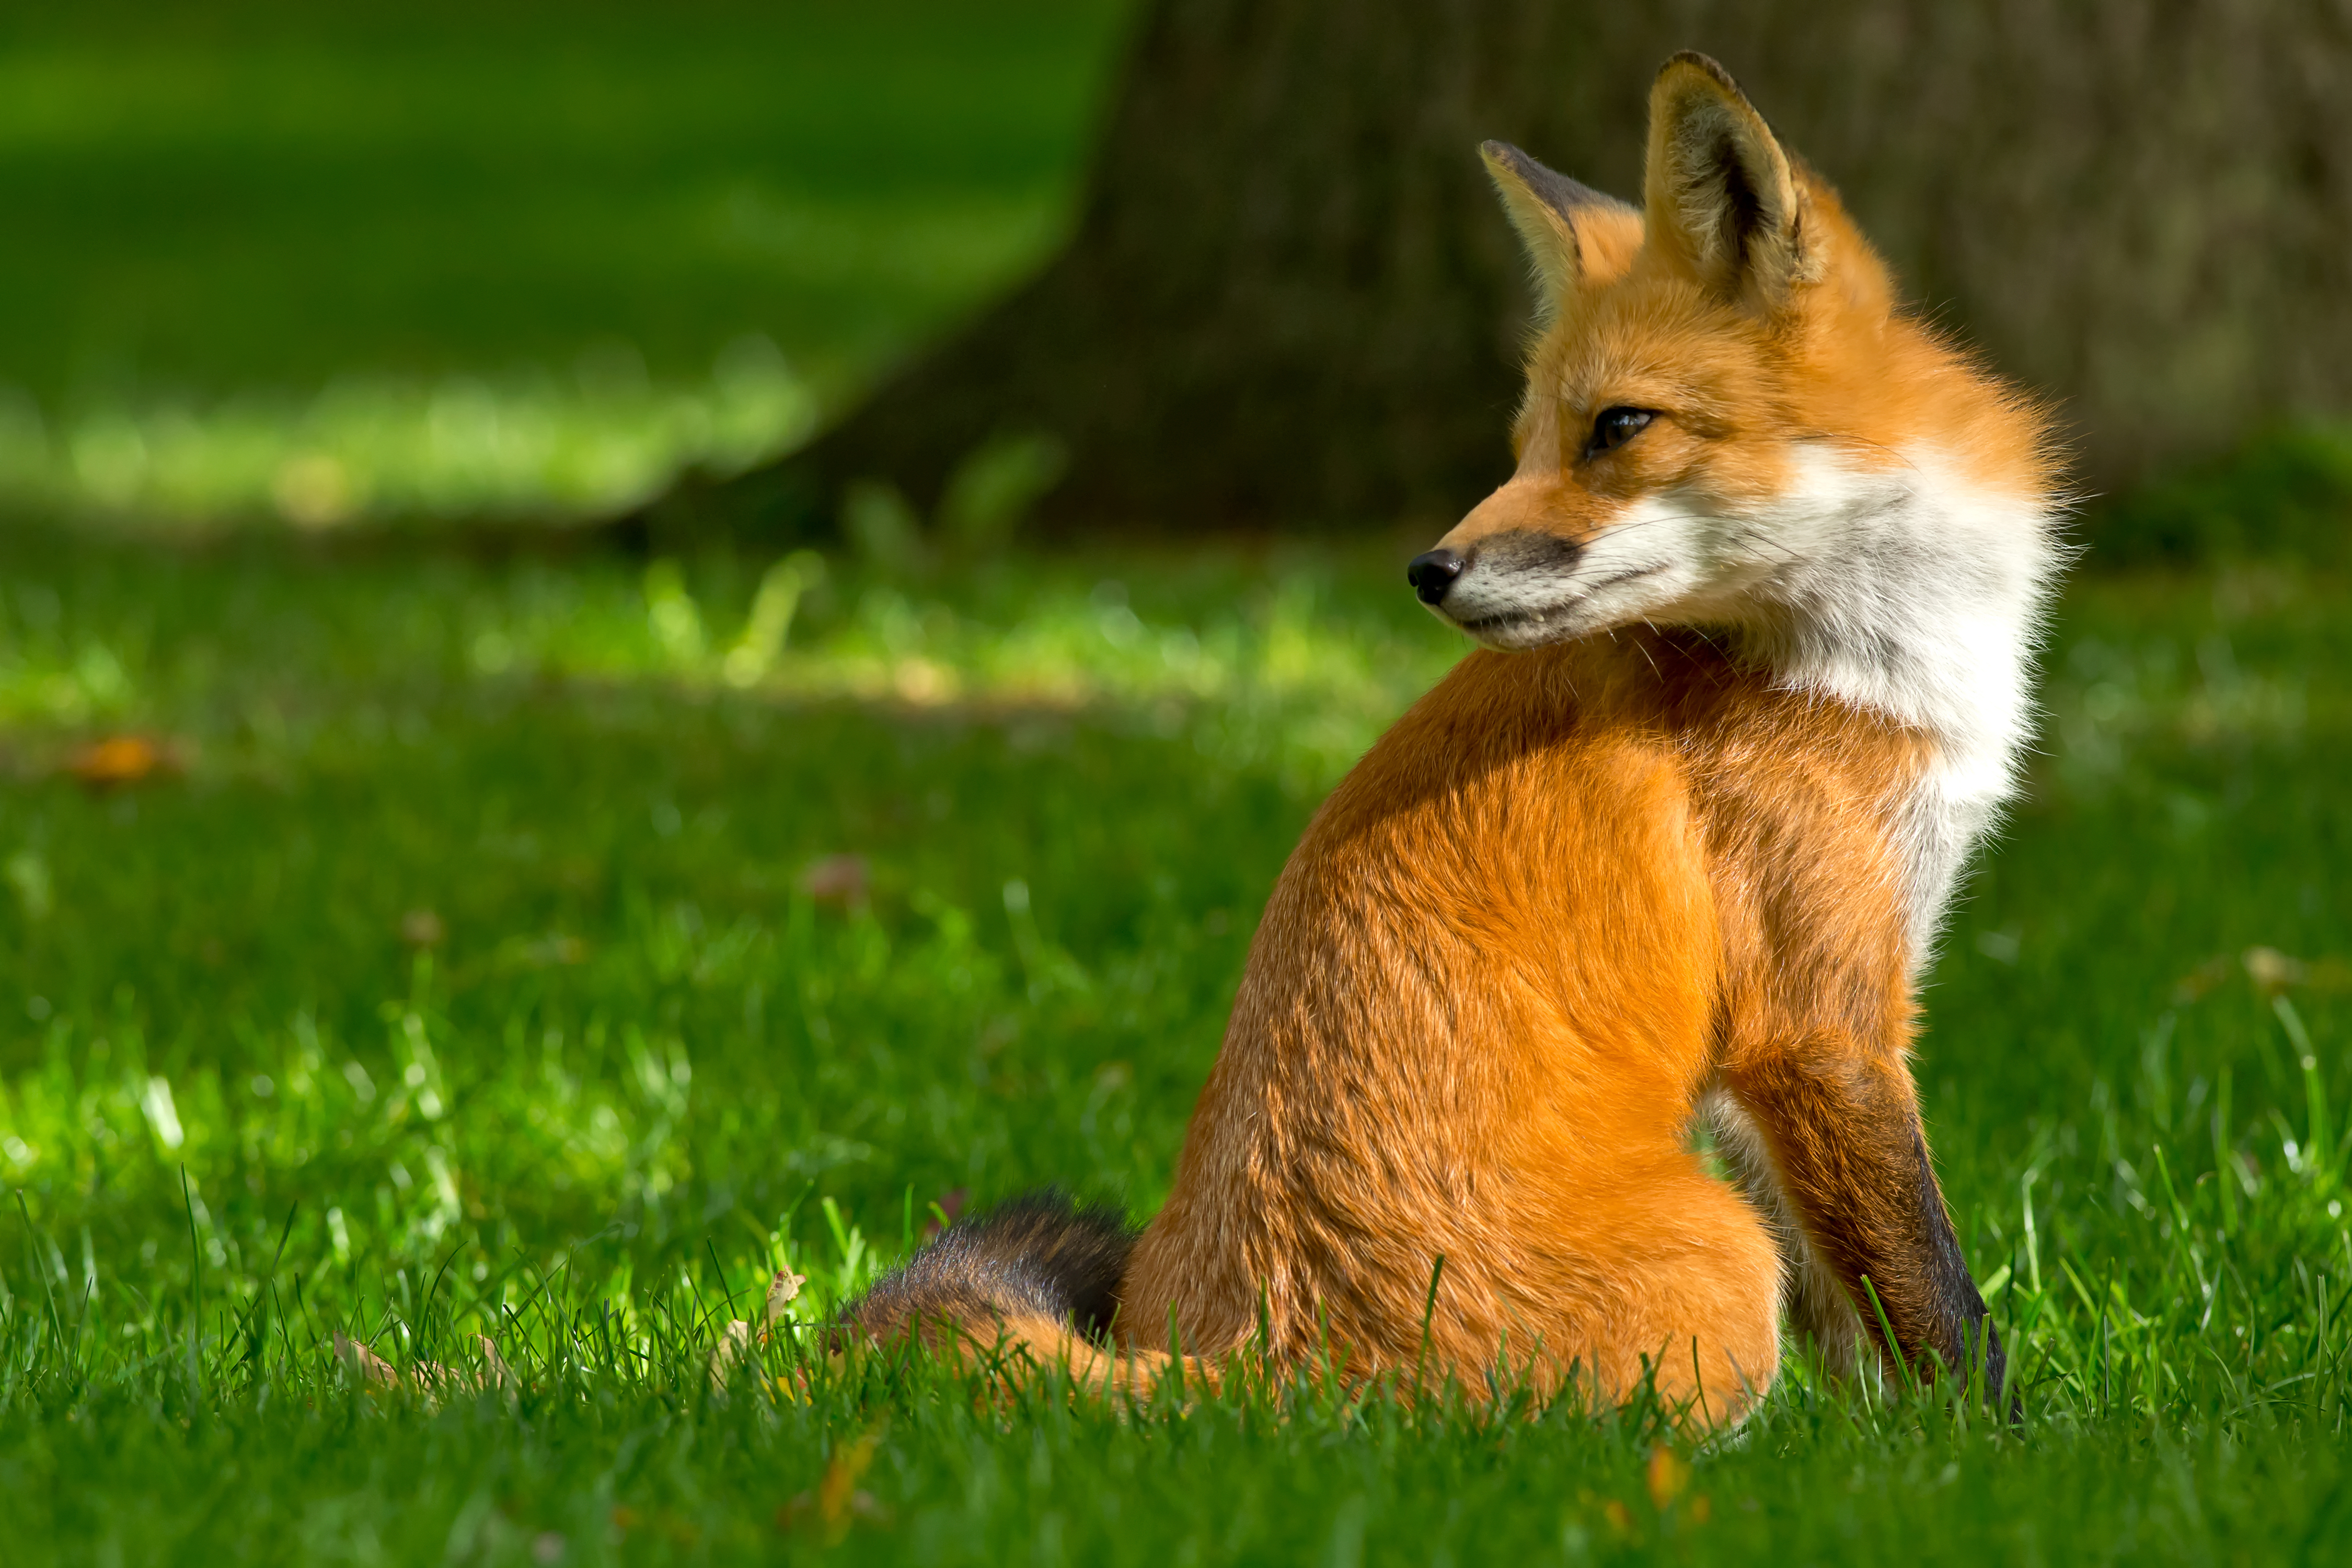 Million fox. Обыкновенная лисица (рыжая лисица). Лиса обои. Лиса летом. Лето животные.